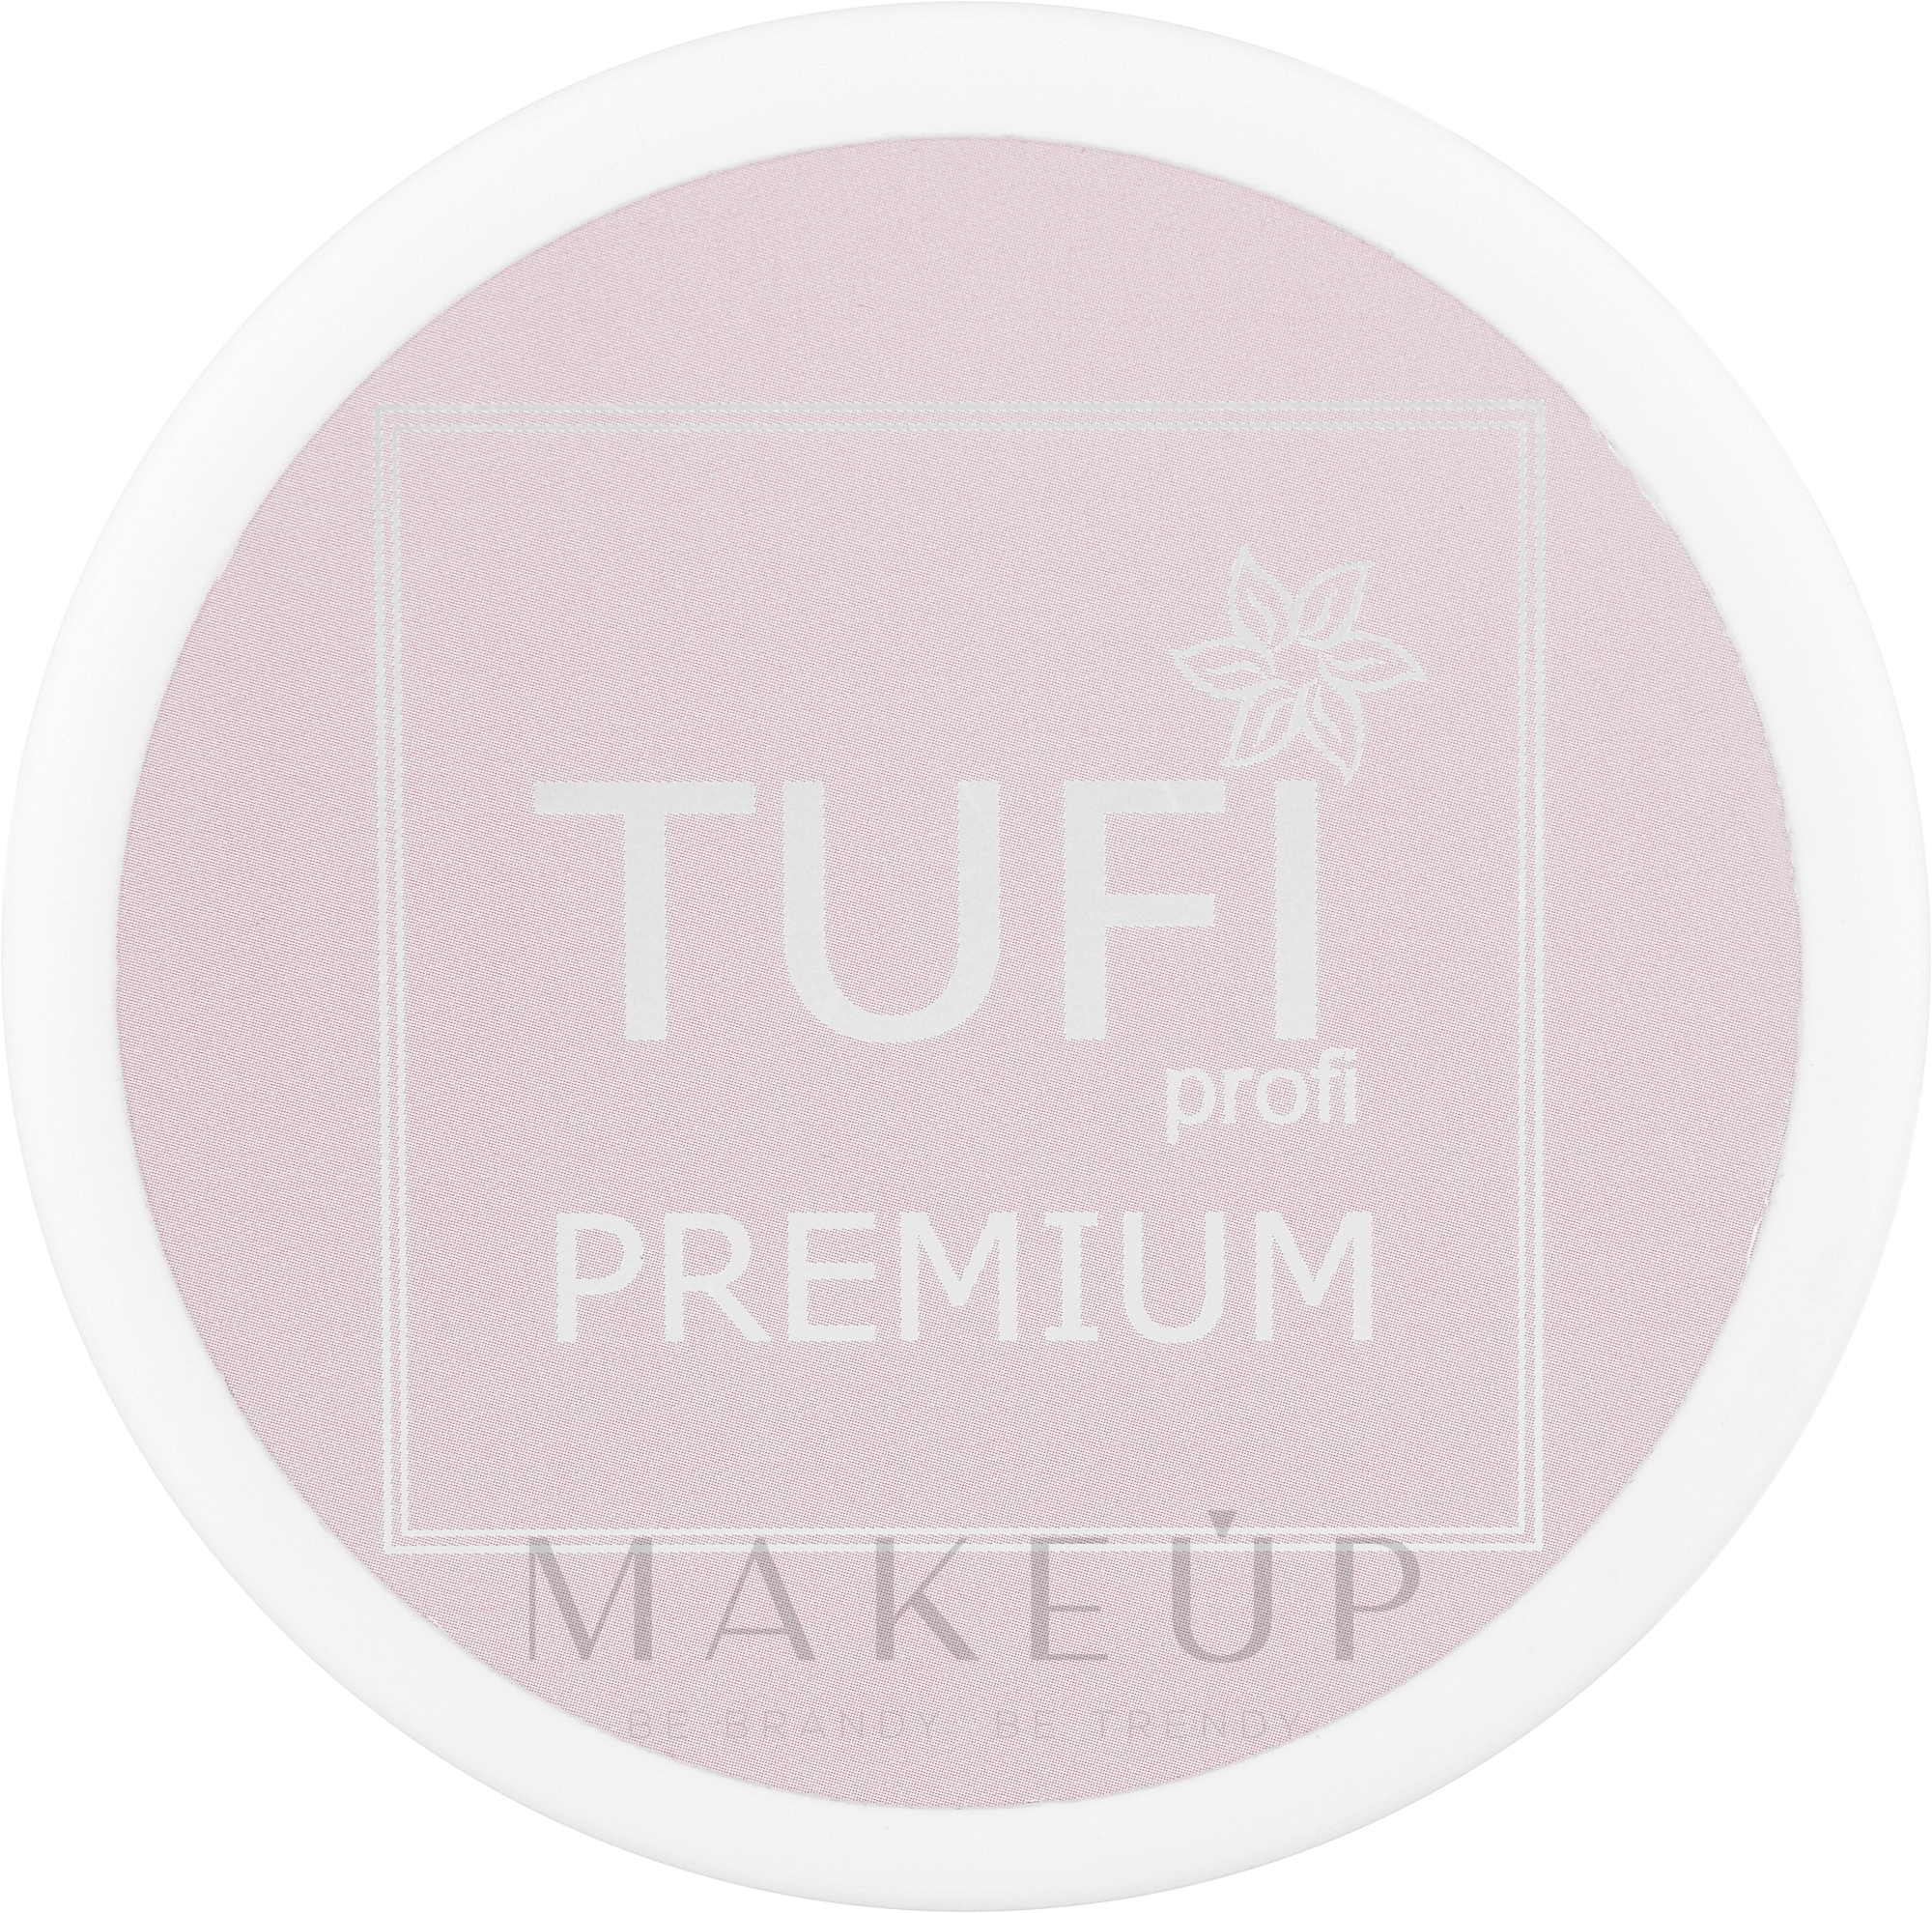 Zuckerpaste weich - Tufi Profi Premium Paste — Bild 300 g